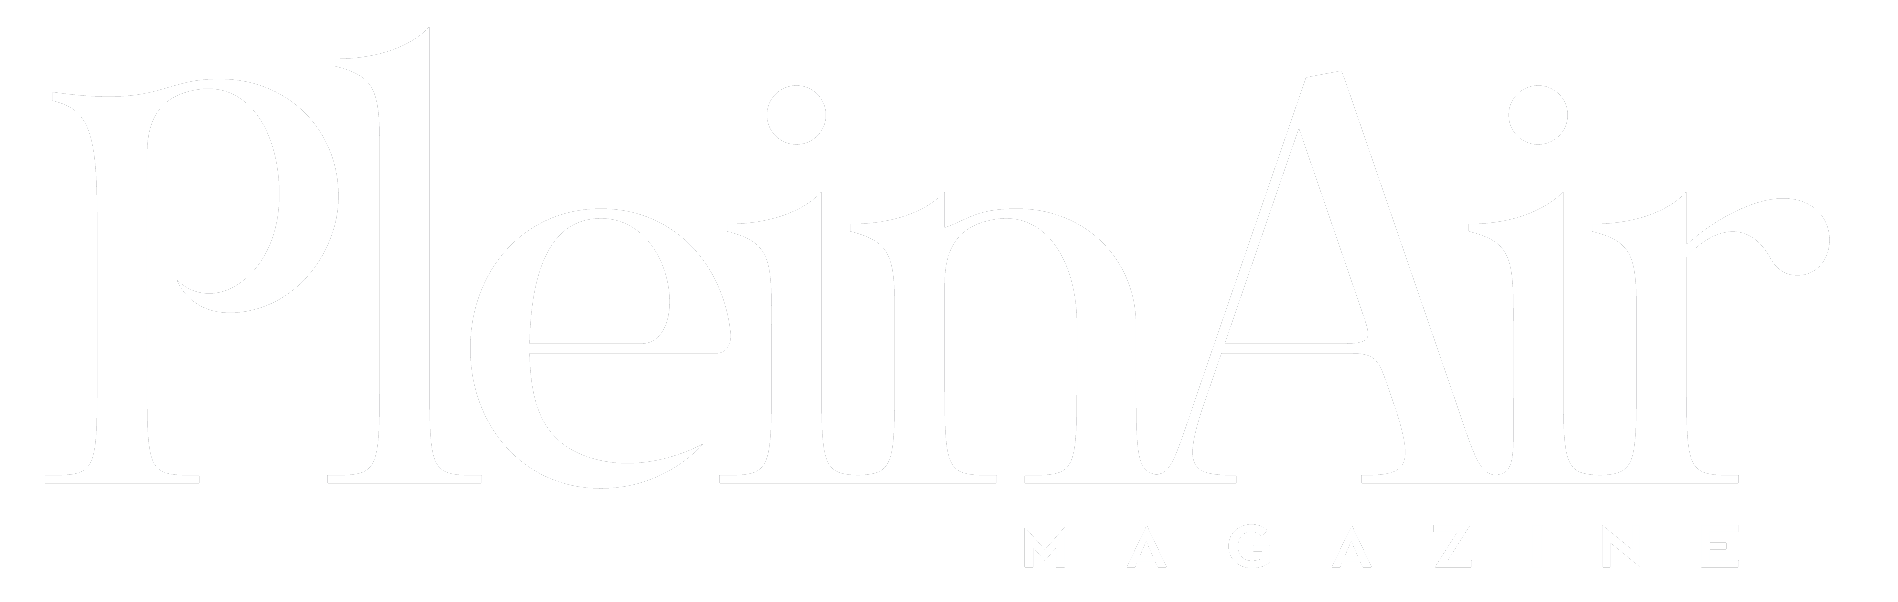 PleinAir Magazine